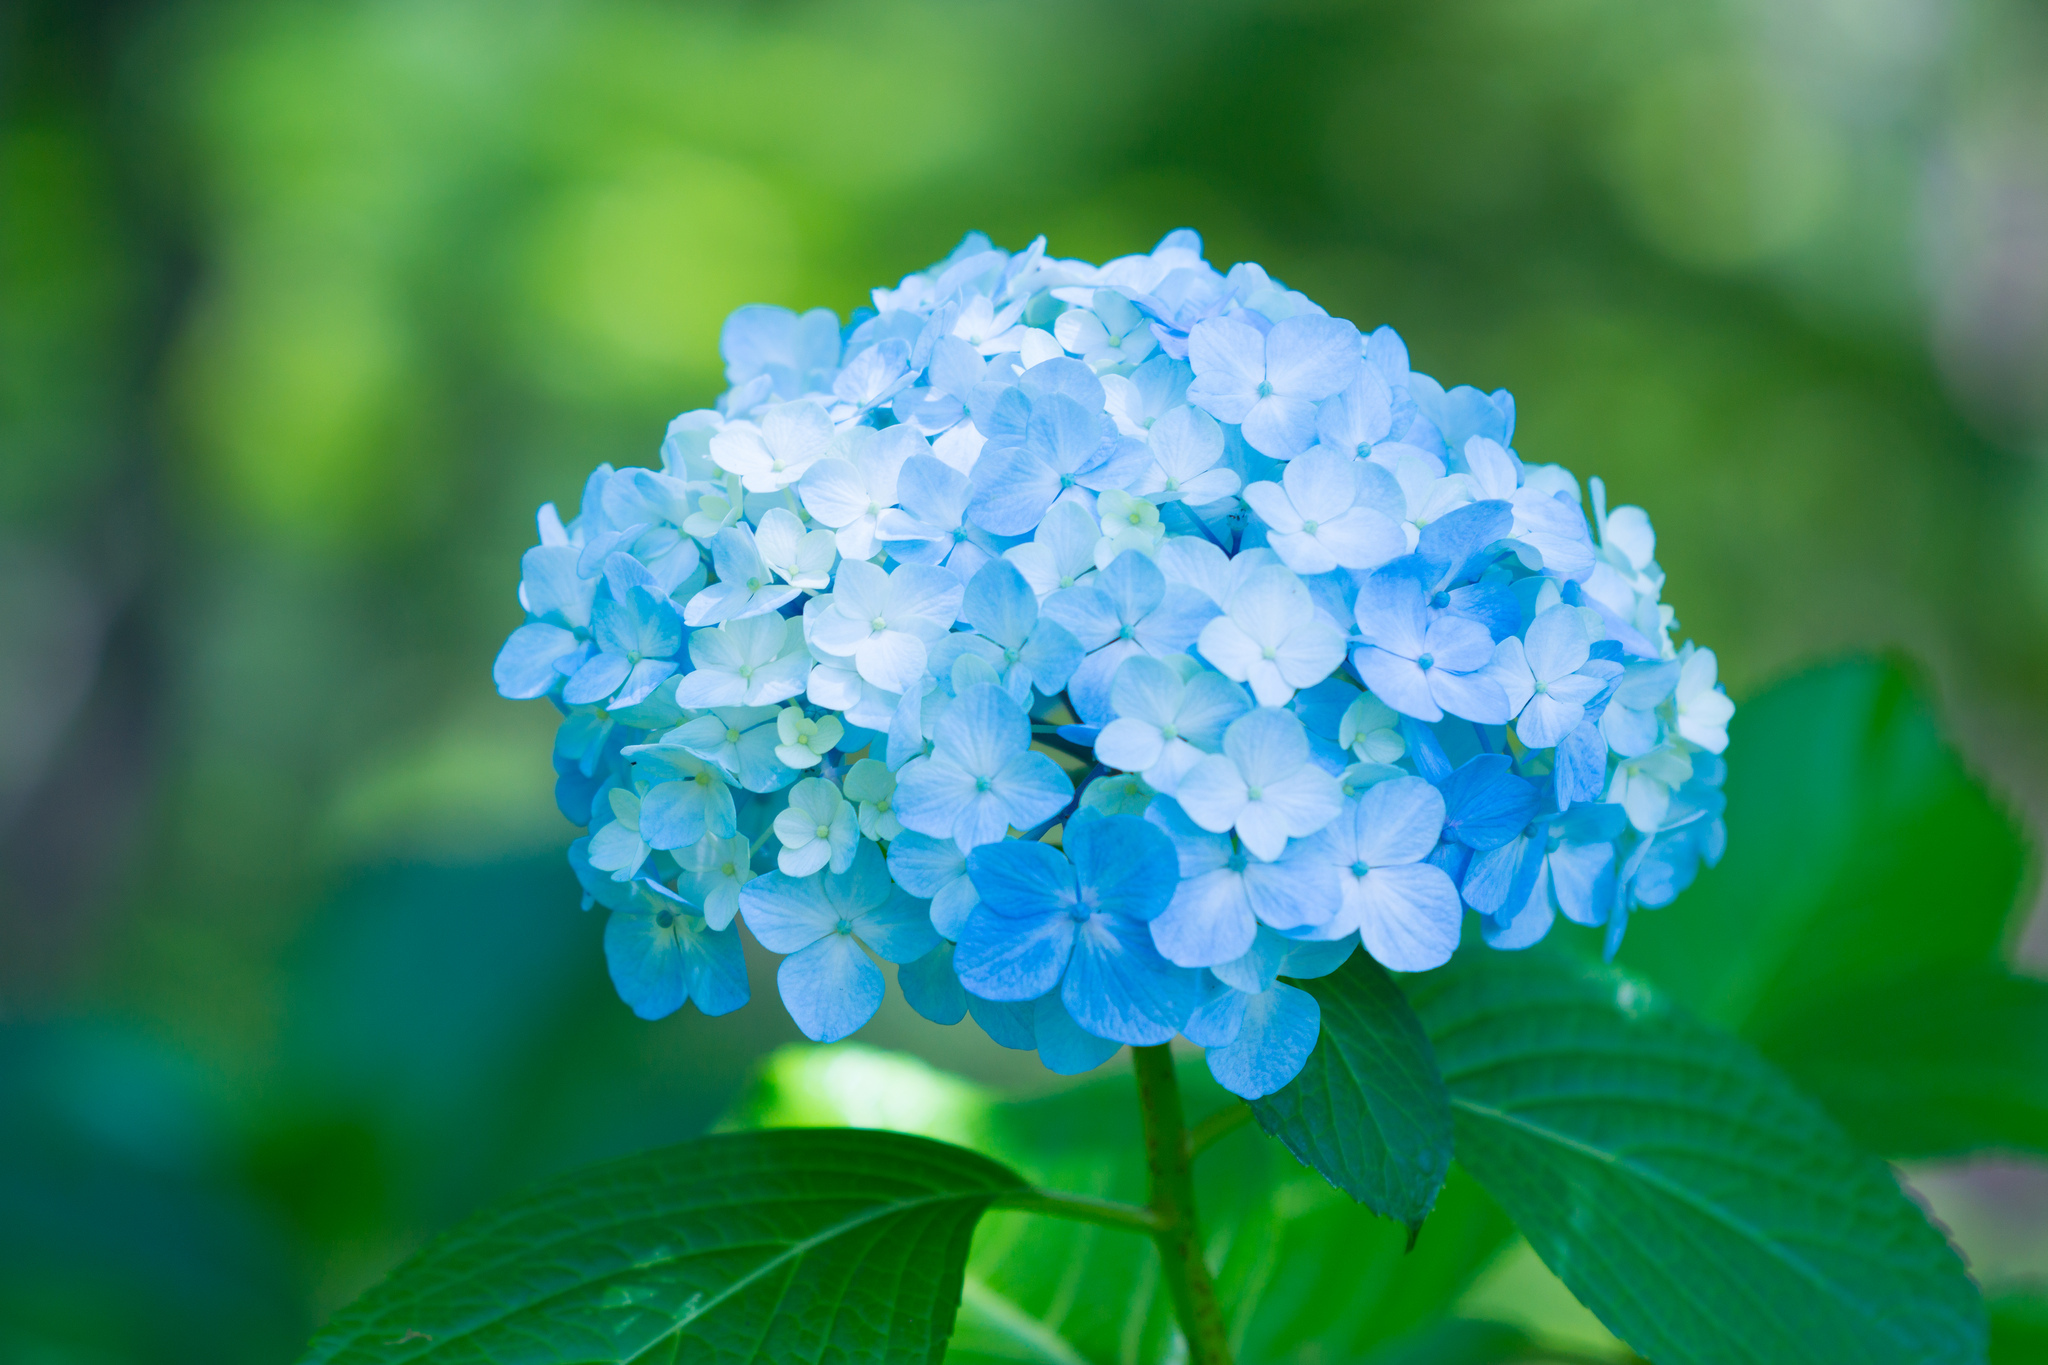 hortensie tapete,blume,blühende pflanze,blau,hortensie,hortensien